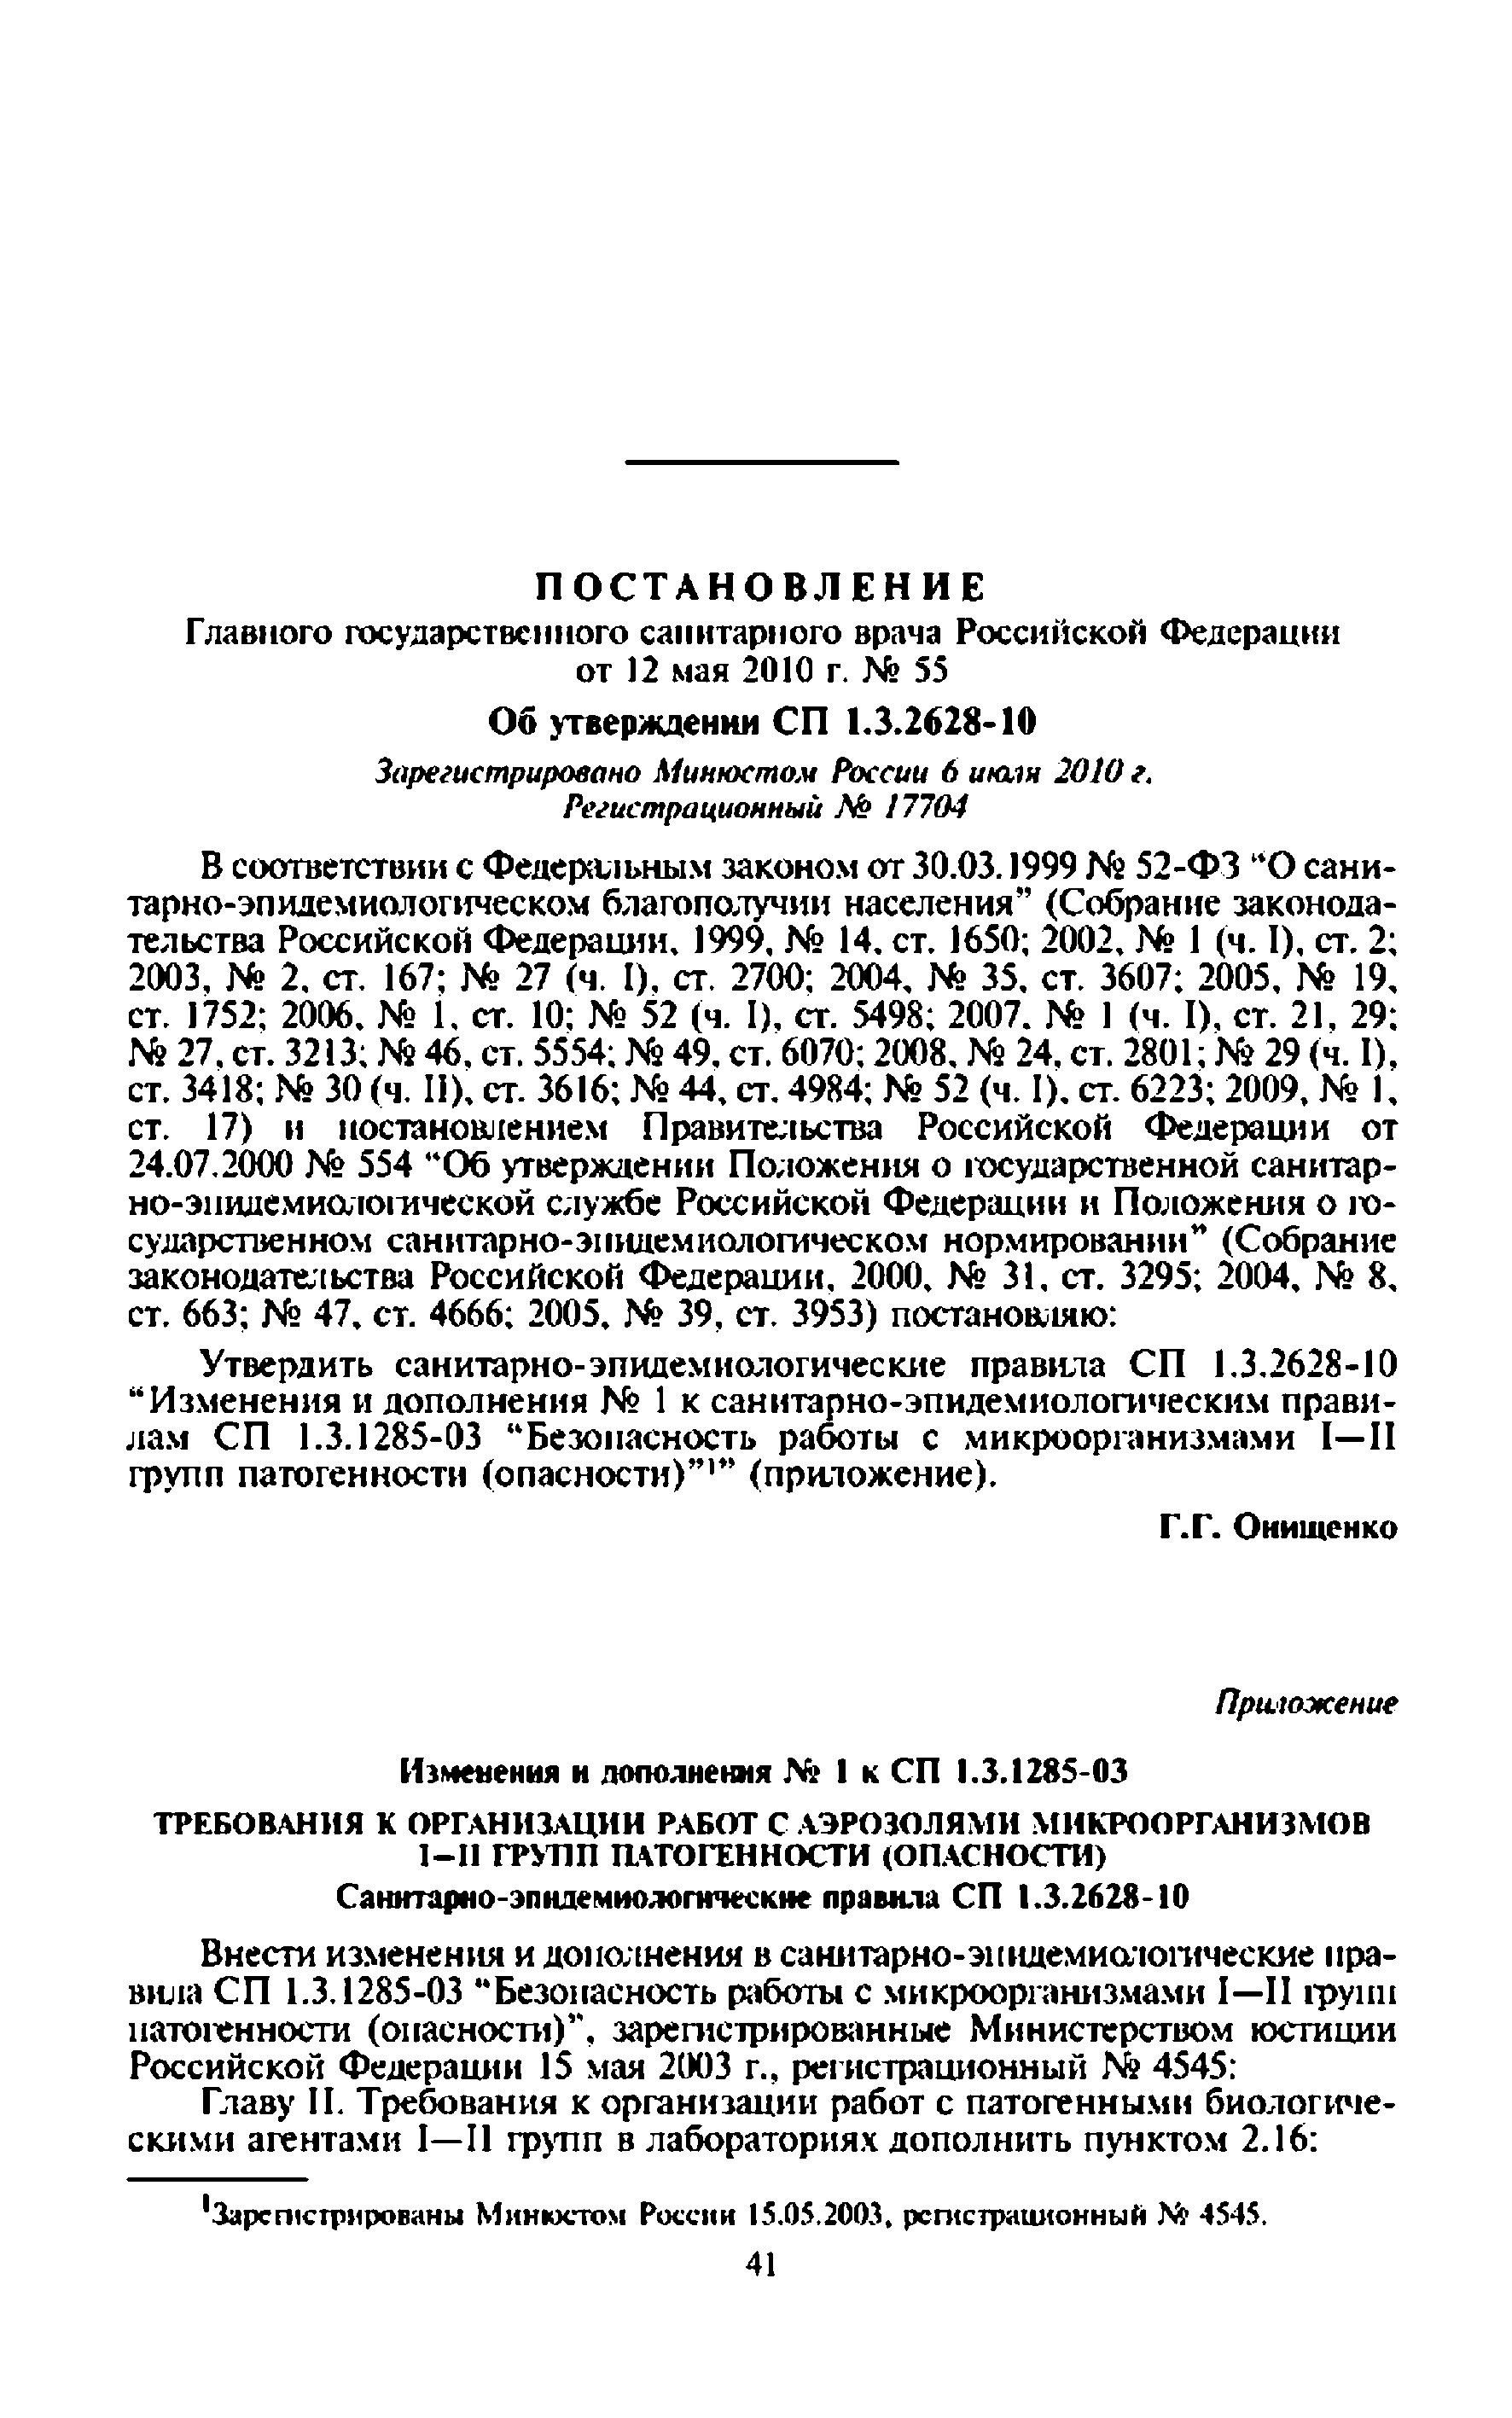 Изменения и дополнения № 1 (СП 1.3.2628-10)